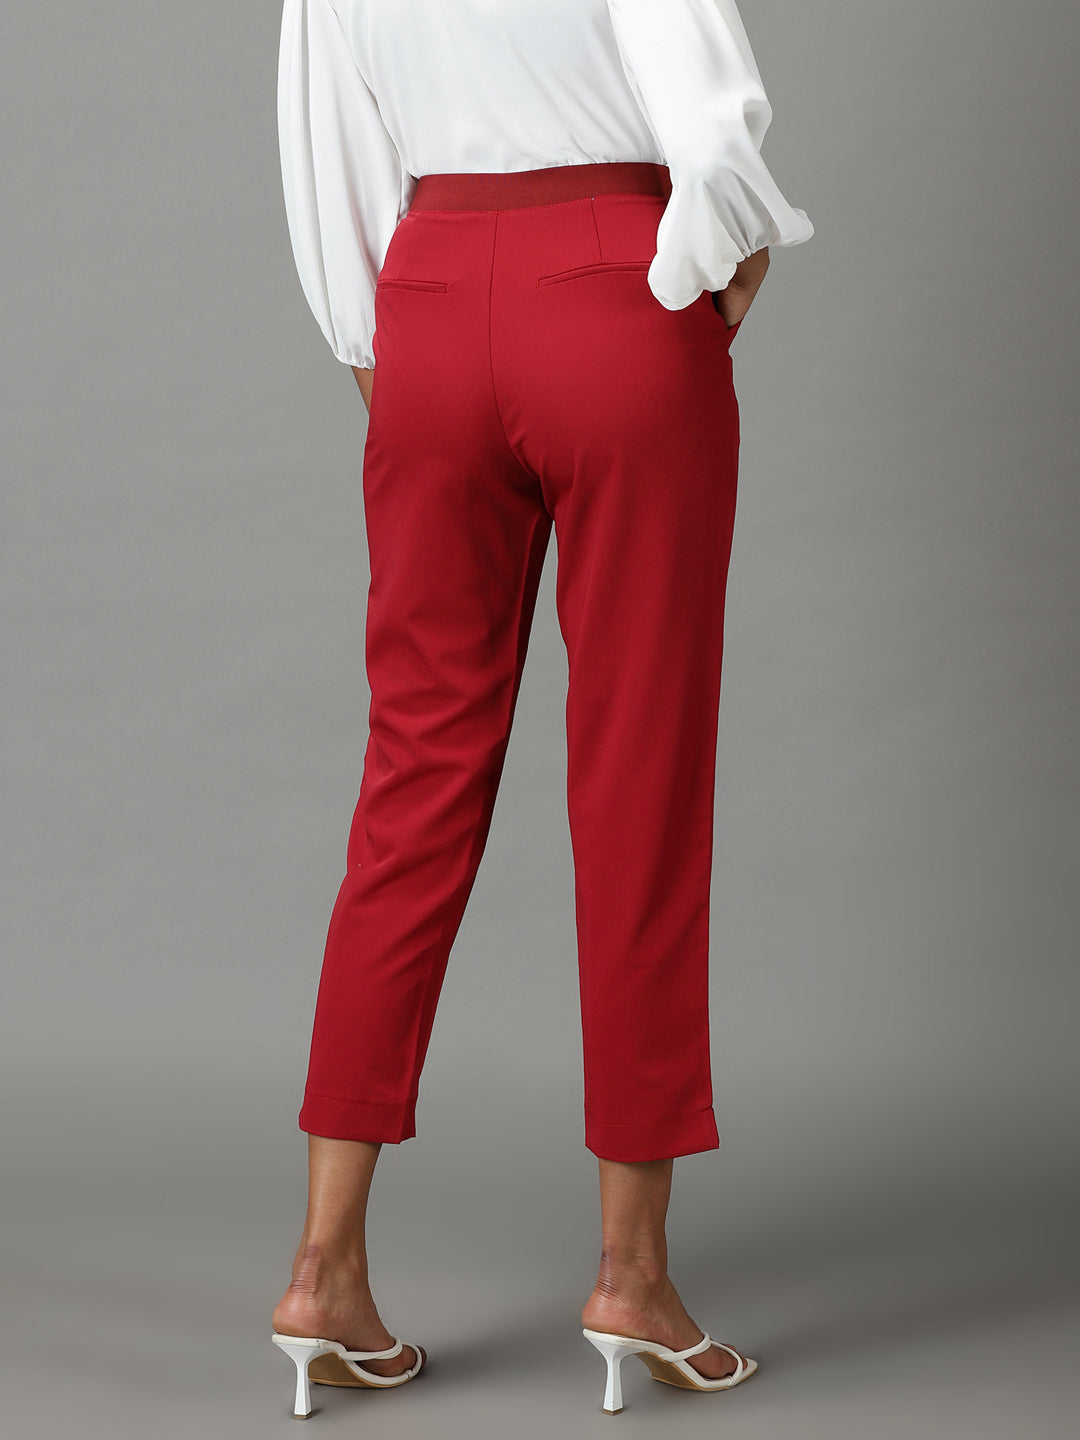 Women's Maroon Solid Formal Trouser